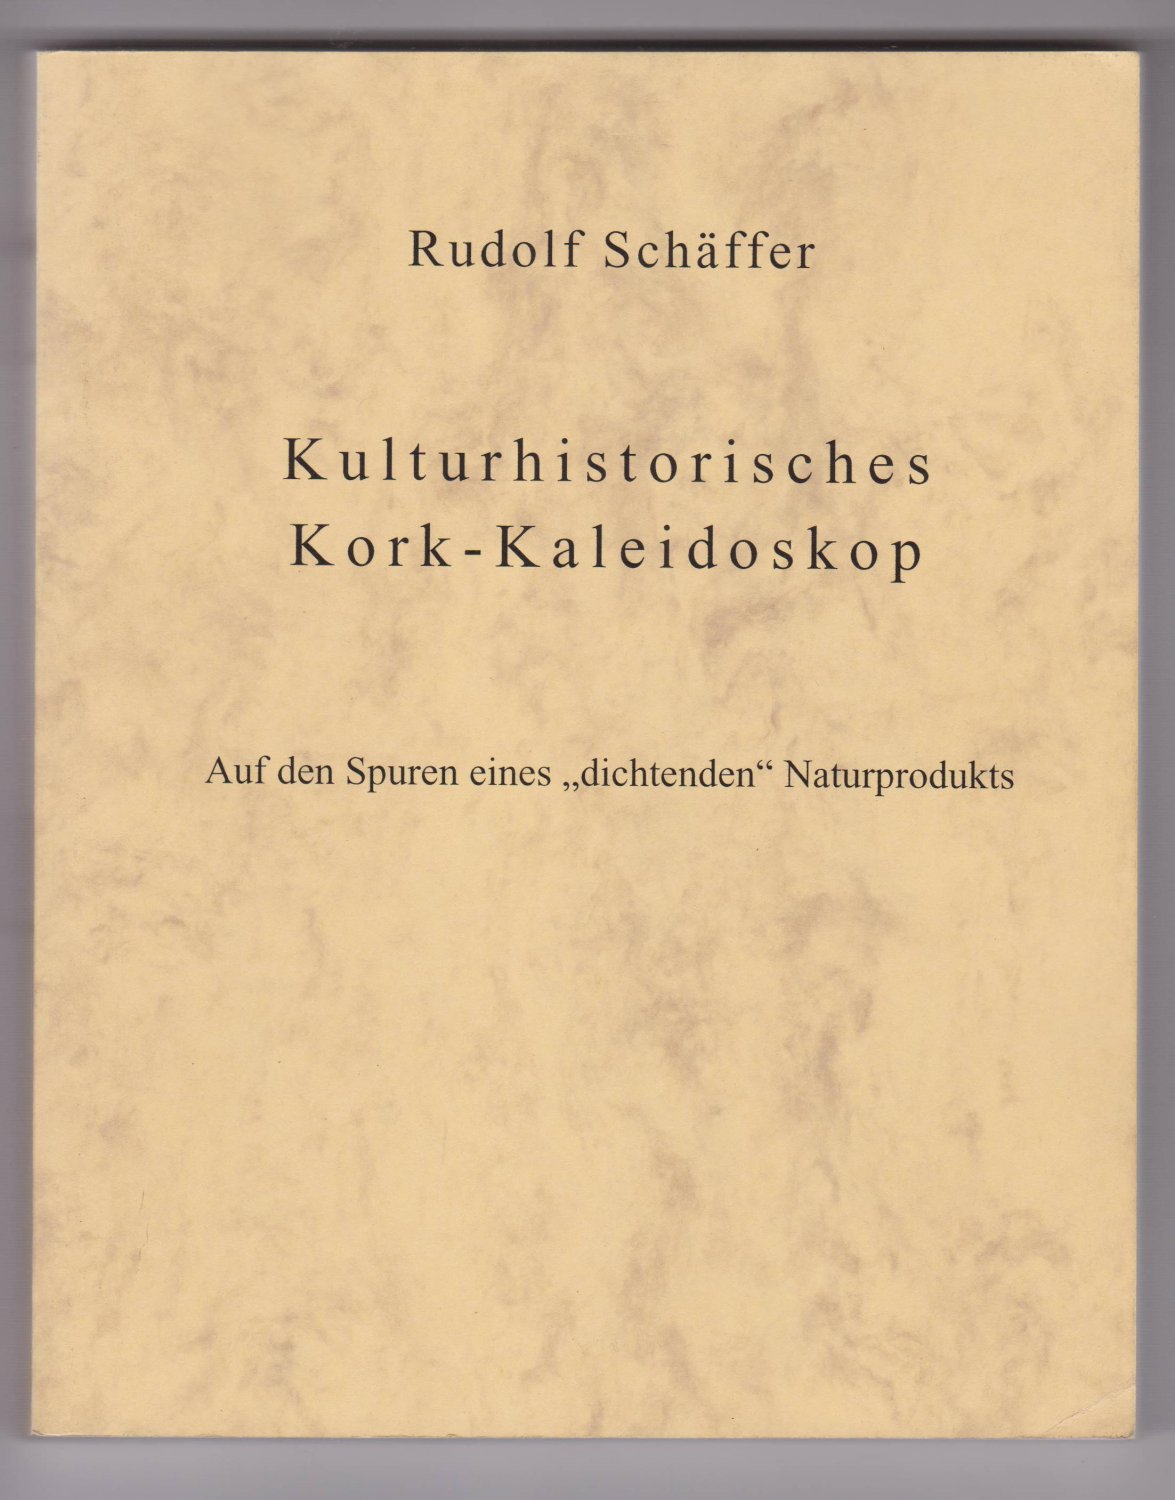 SCHÄFFER, Rudolf:  Kulturhistorisches Kork-Kaleidoskop. Auf den Spuren eines "dichtenden" Naturprodukts. 